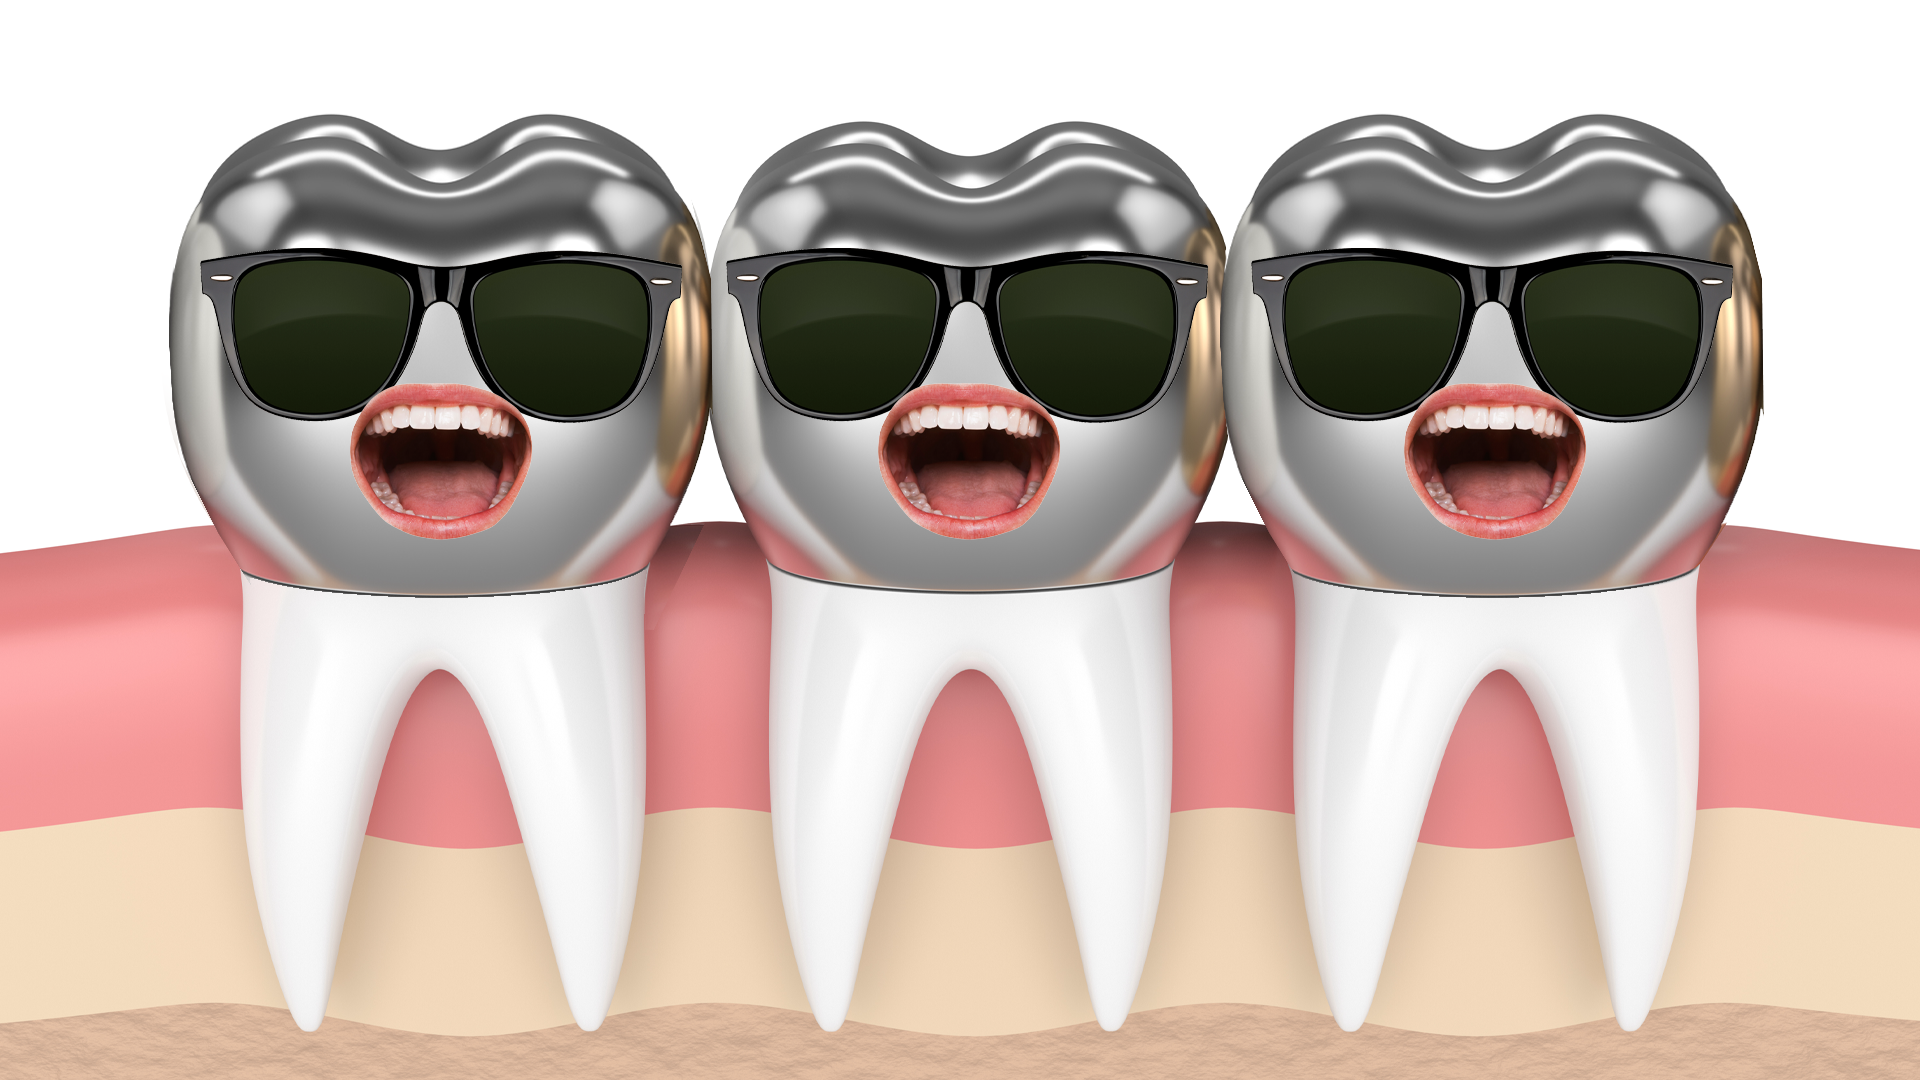 A row of metal teeth